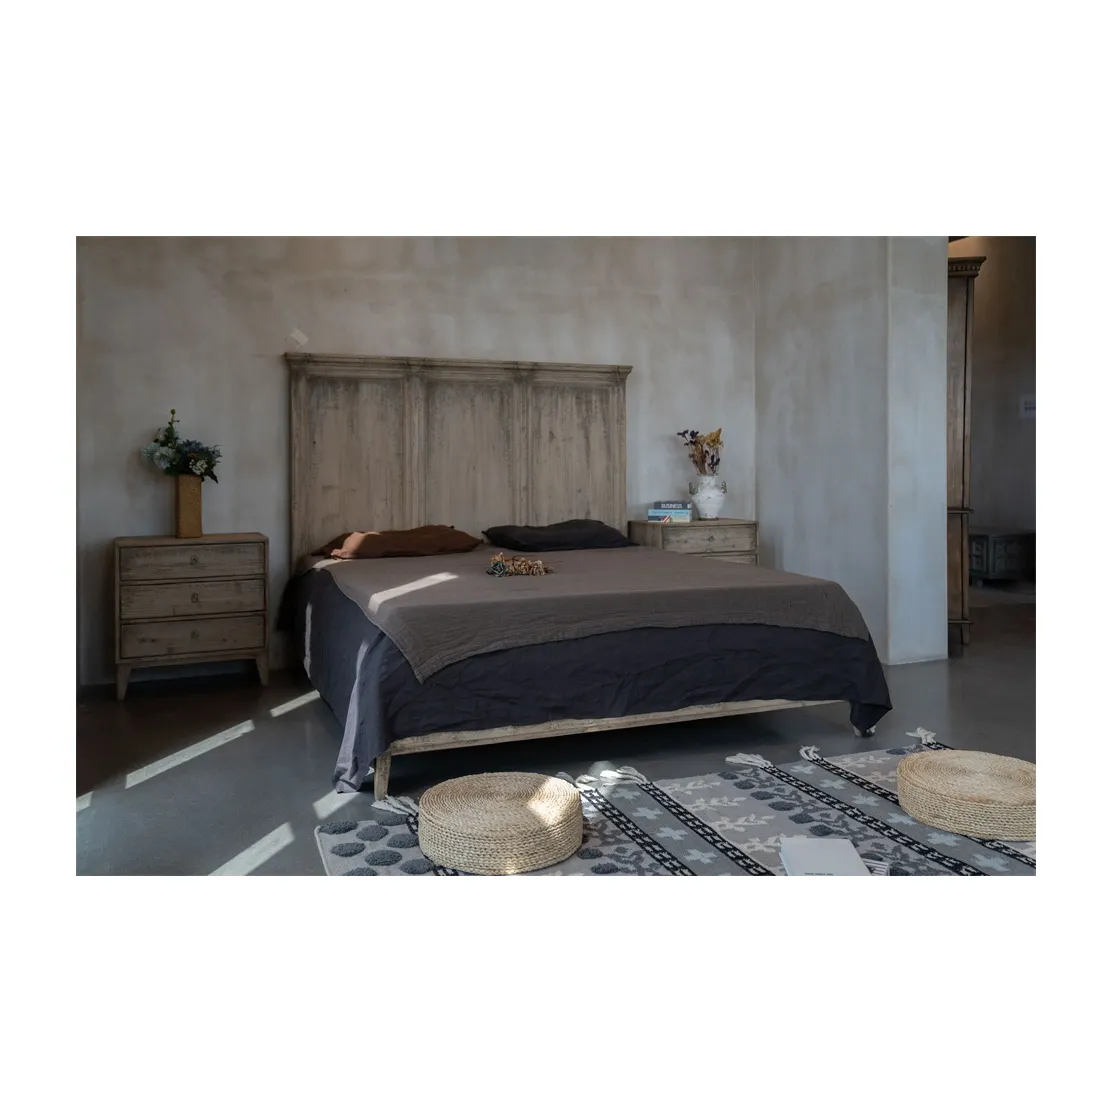 Cama doble de madera para dormitorio, diseño clásico, larga duración, alta calidad